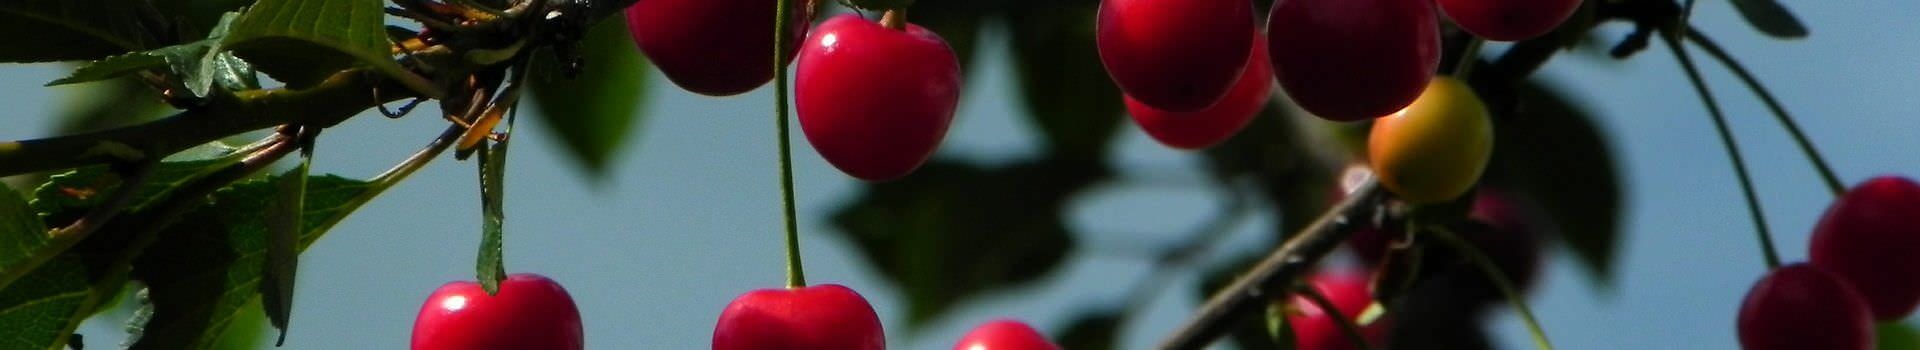 cherries-598170_1920